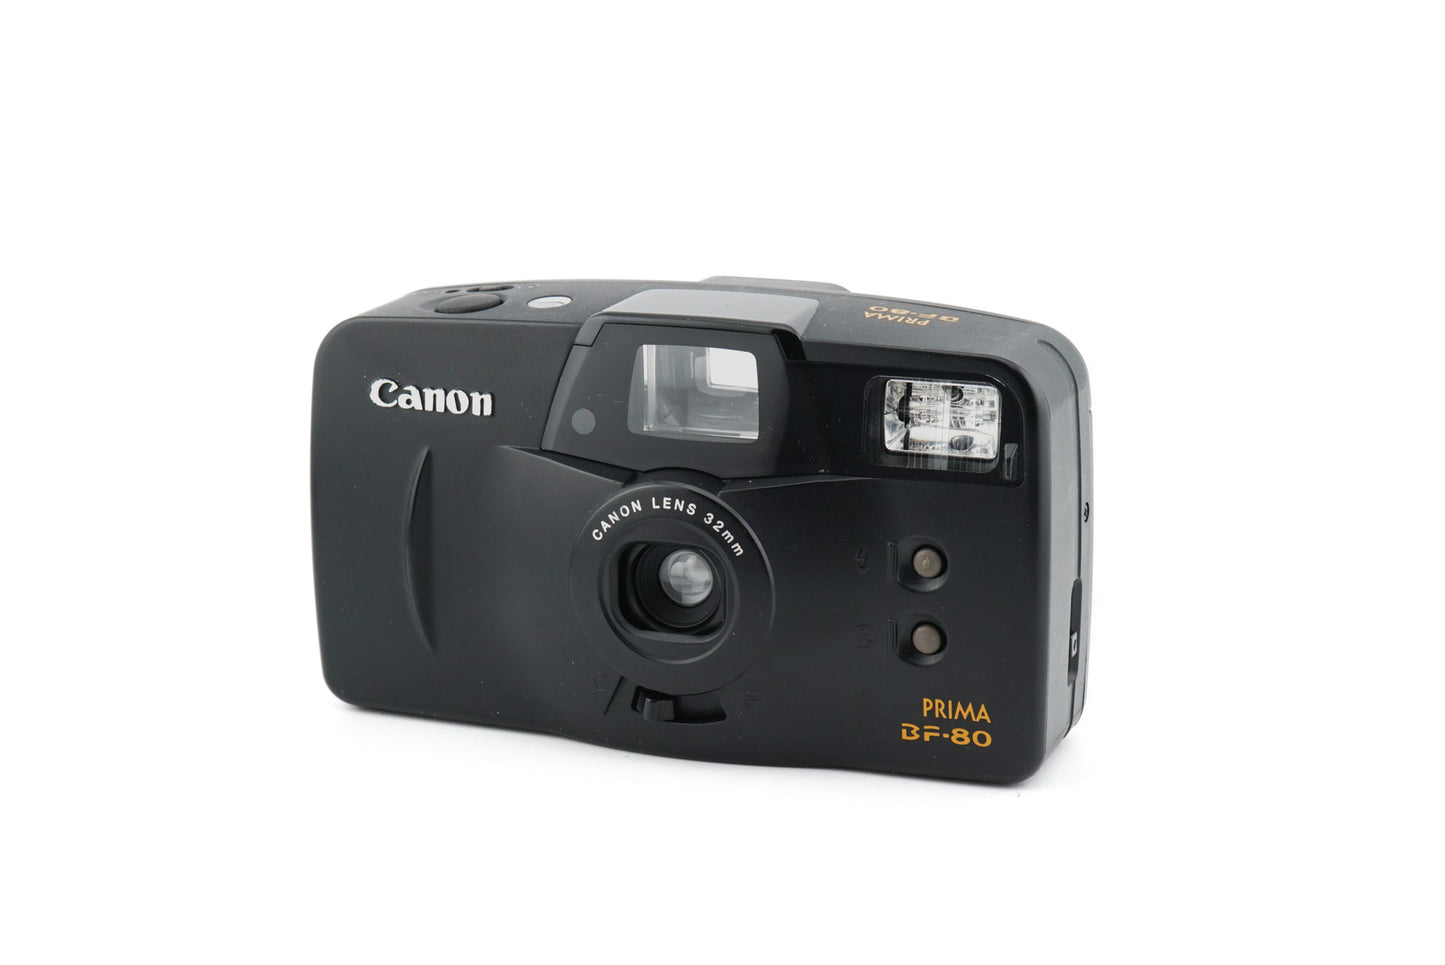 Canon Prima BF-80 - Camera